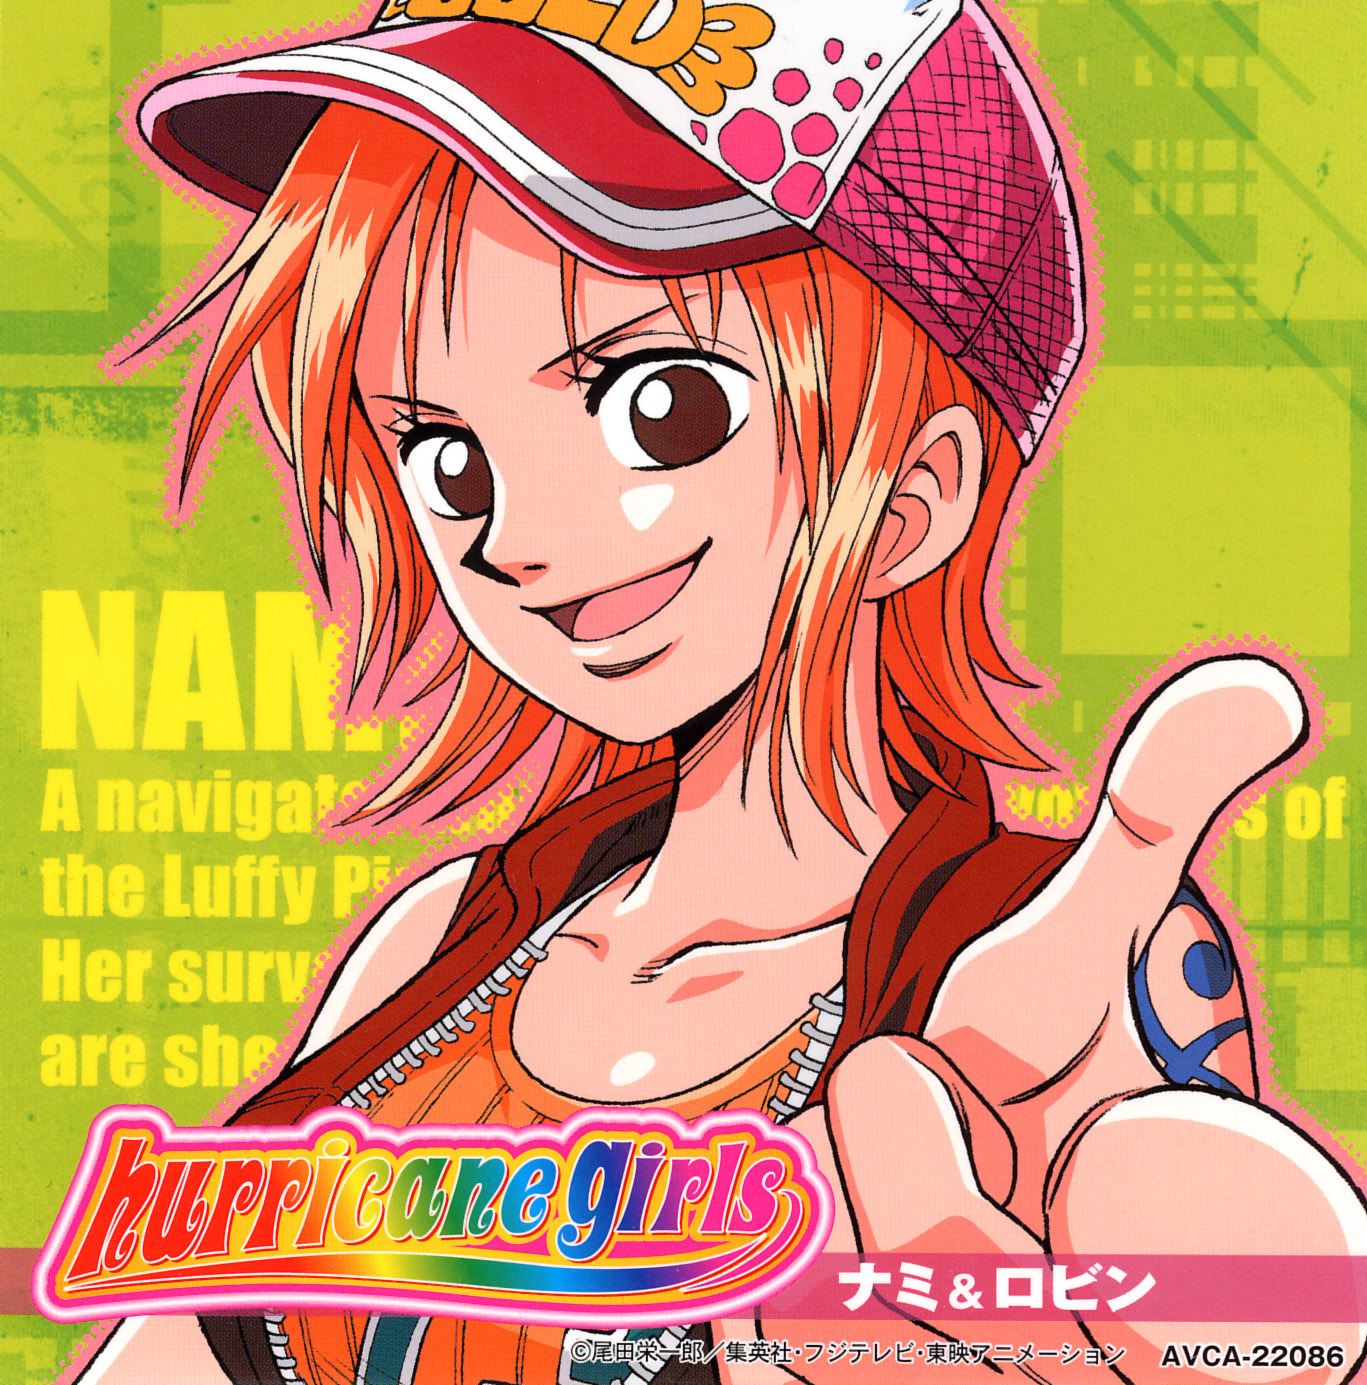 Nami One Piece Quotes Quotesgram